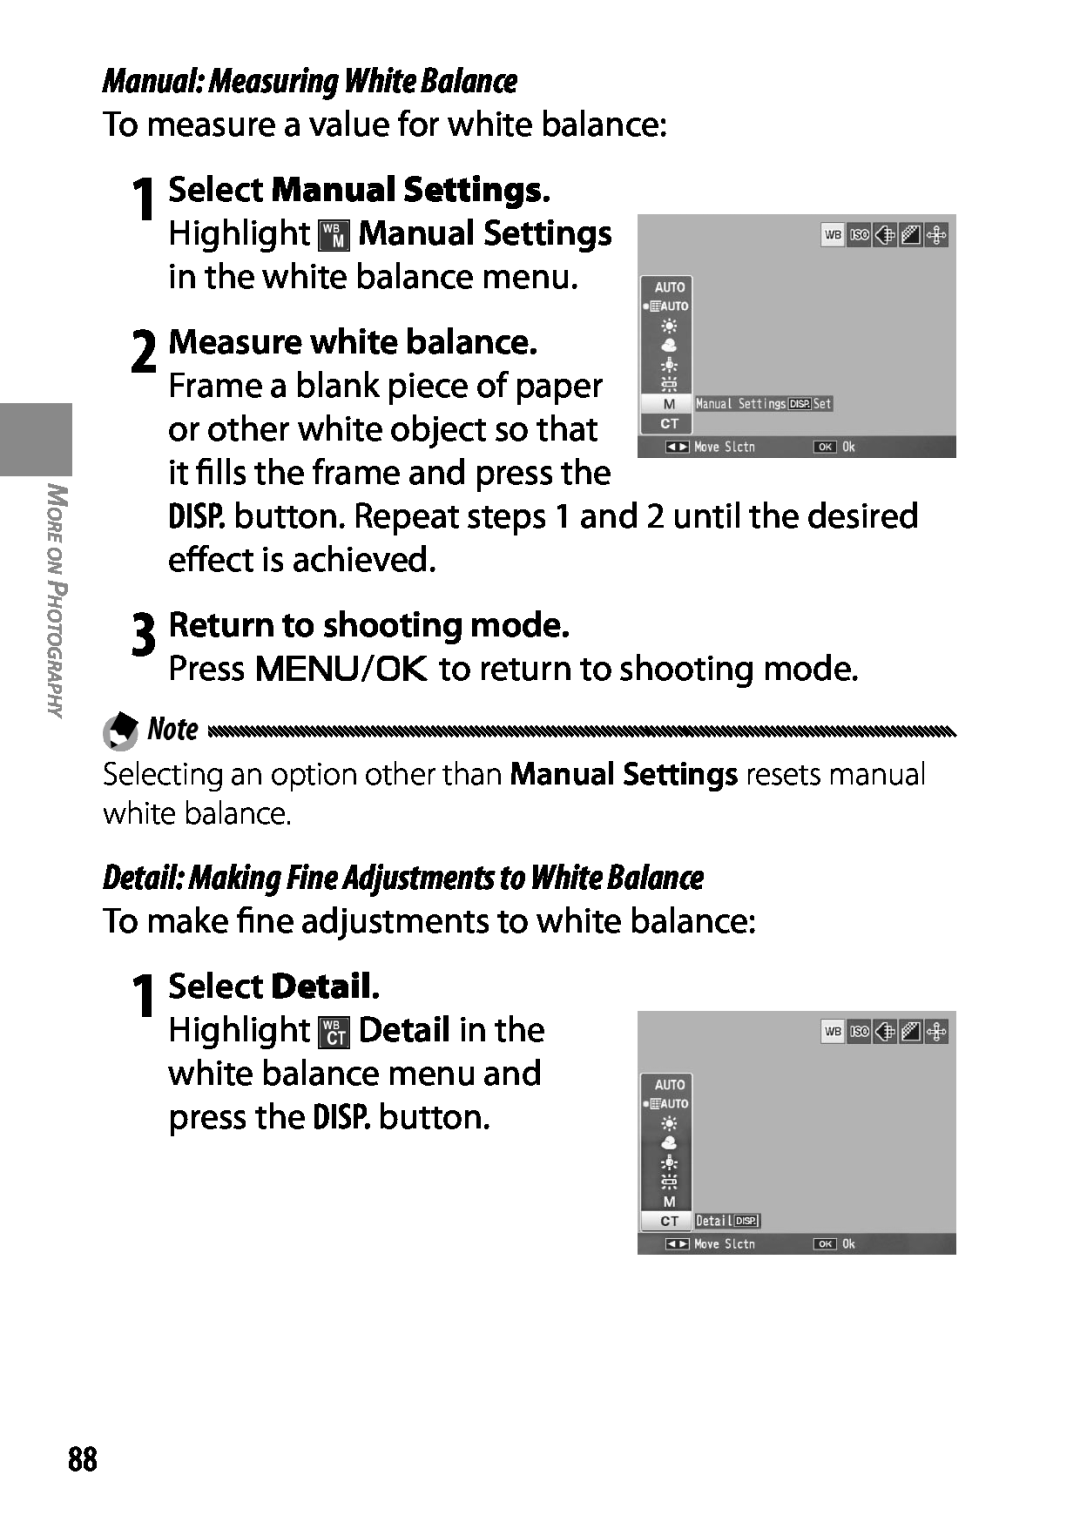 Ricoh 170543, GXR, 170553 manual 1 Select Detail, Manual Measuring White Balance, 3 Return to shooting mode 